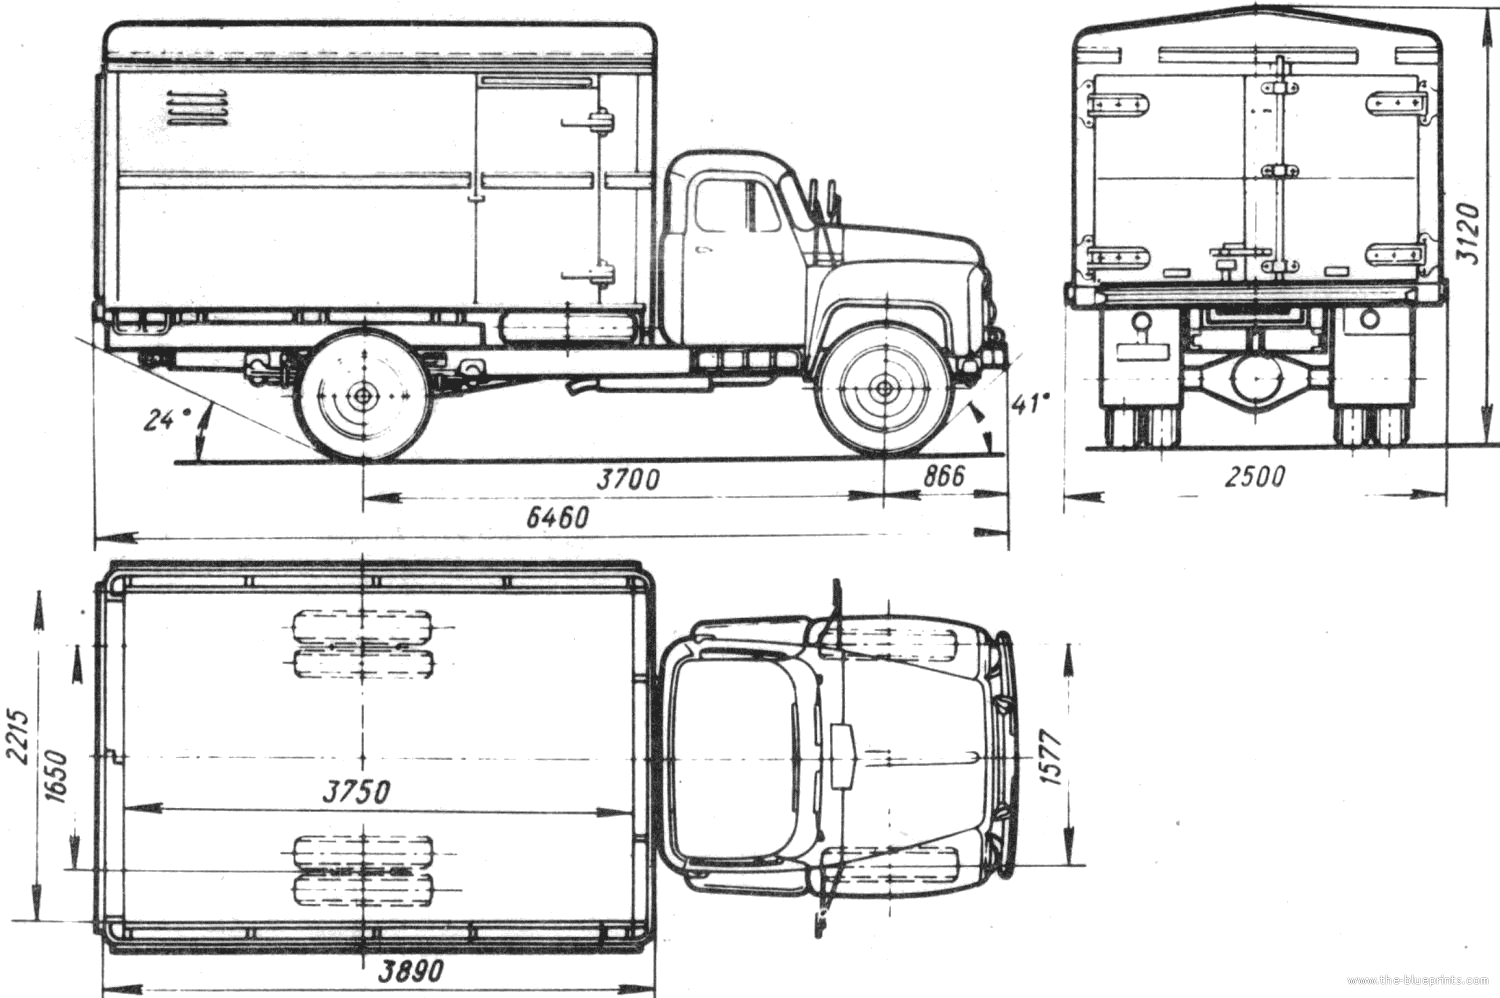 The-Blueprints.com - Blueprints > Trucks > GAZ > GAZ-51-01 GZSA-